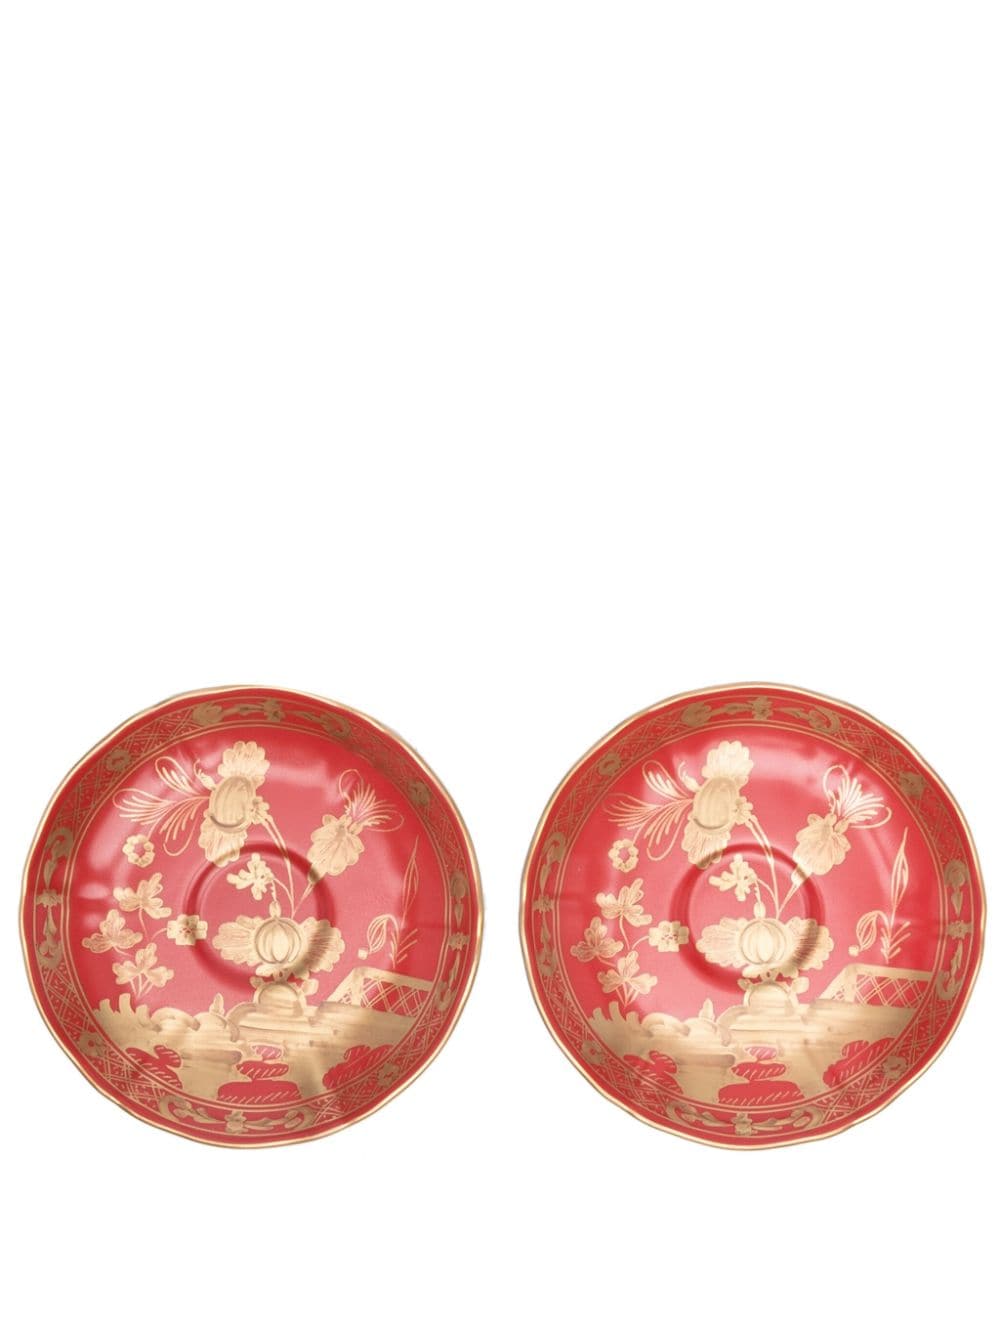 GINORI 1735 Rubrum porcelain plate (set of two) - Red von GINORI 1735